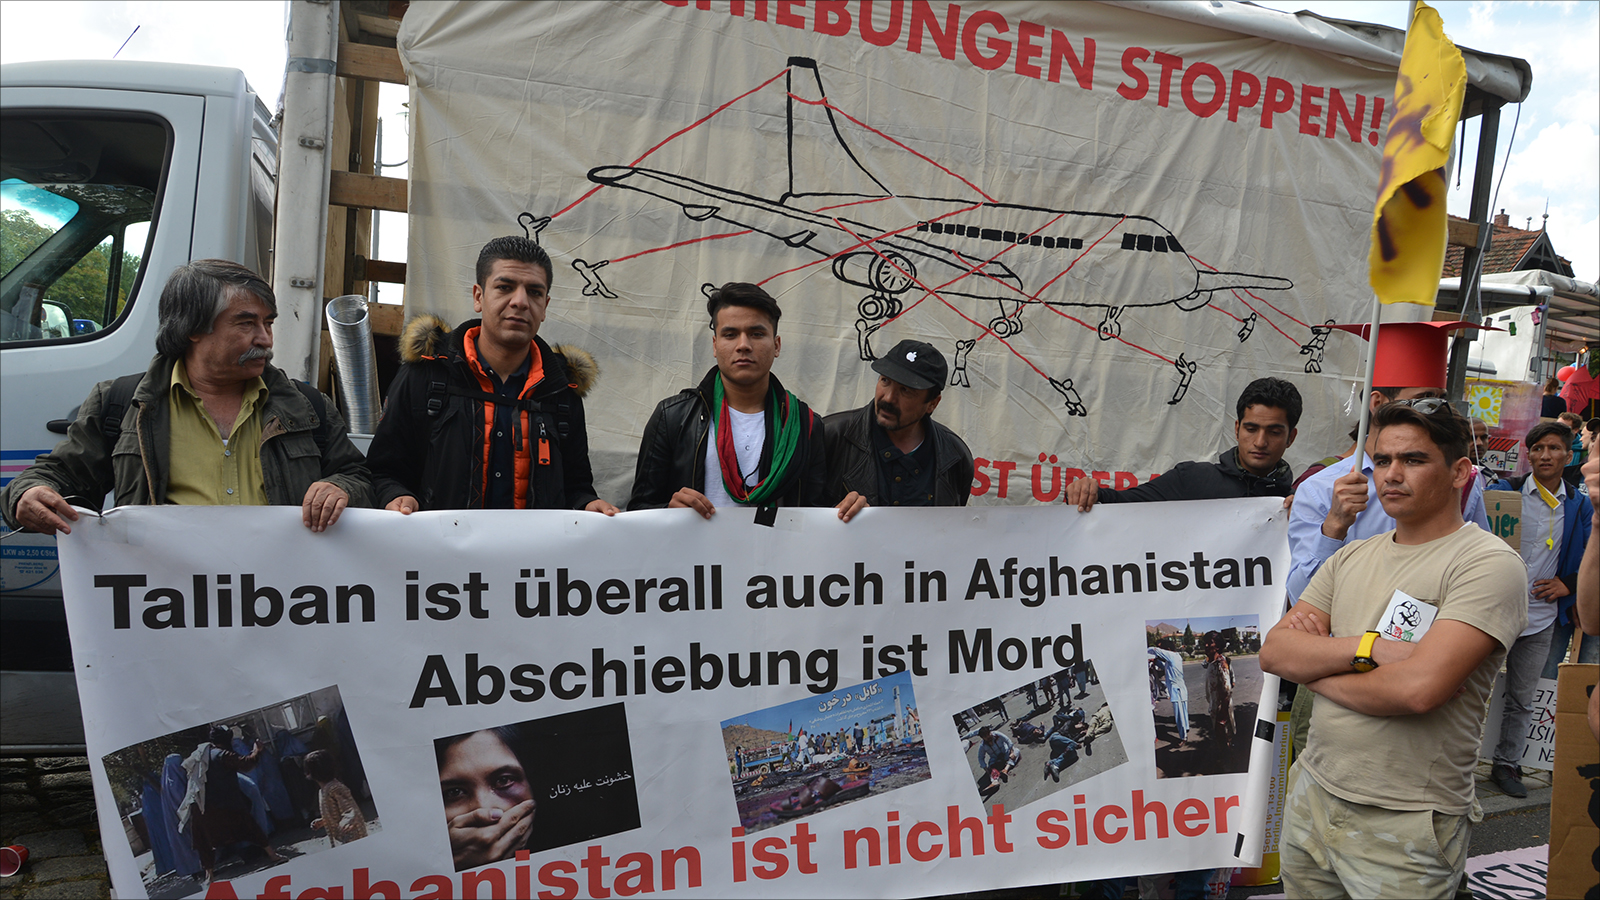 ‪لاجئون أفغان يرفعون لافتات عن اضطراب بلدهم‬ لاجئون أفغان يرفعون لافتات عن اضطراب بلدهم (الجزيرة)